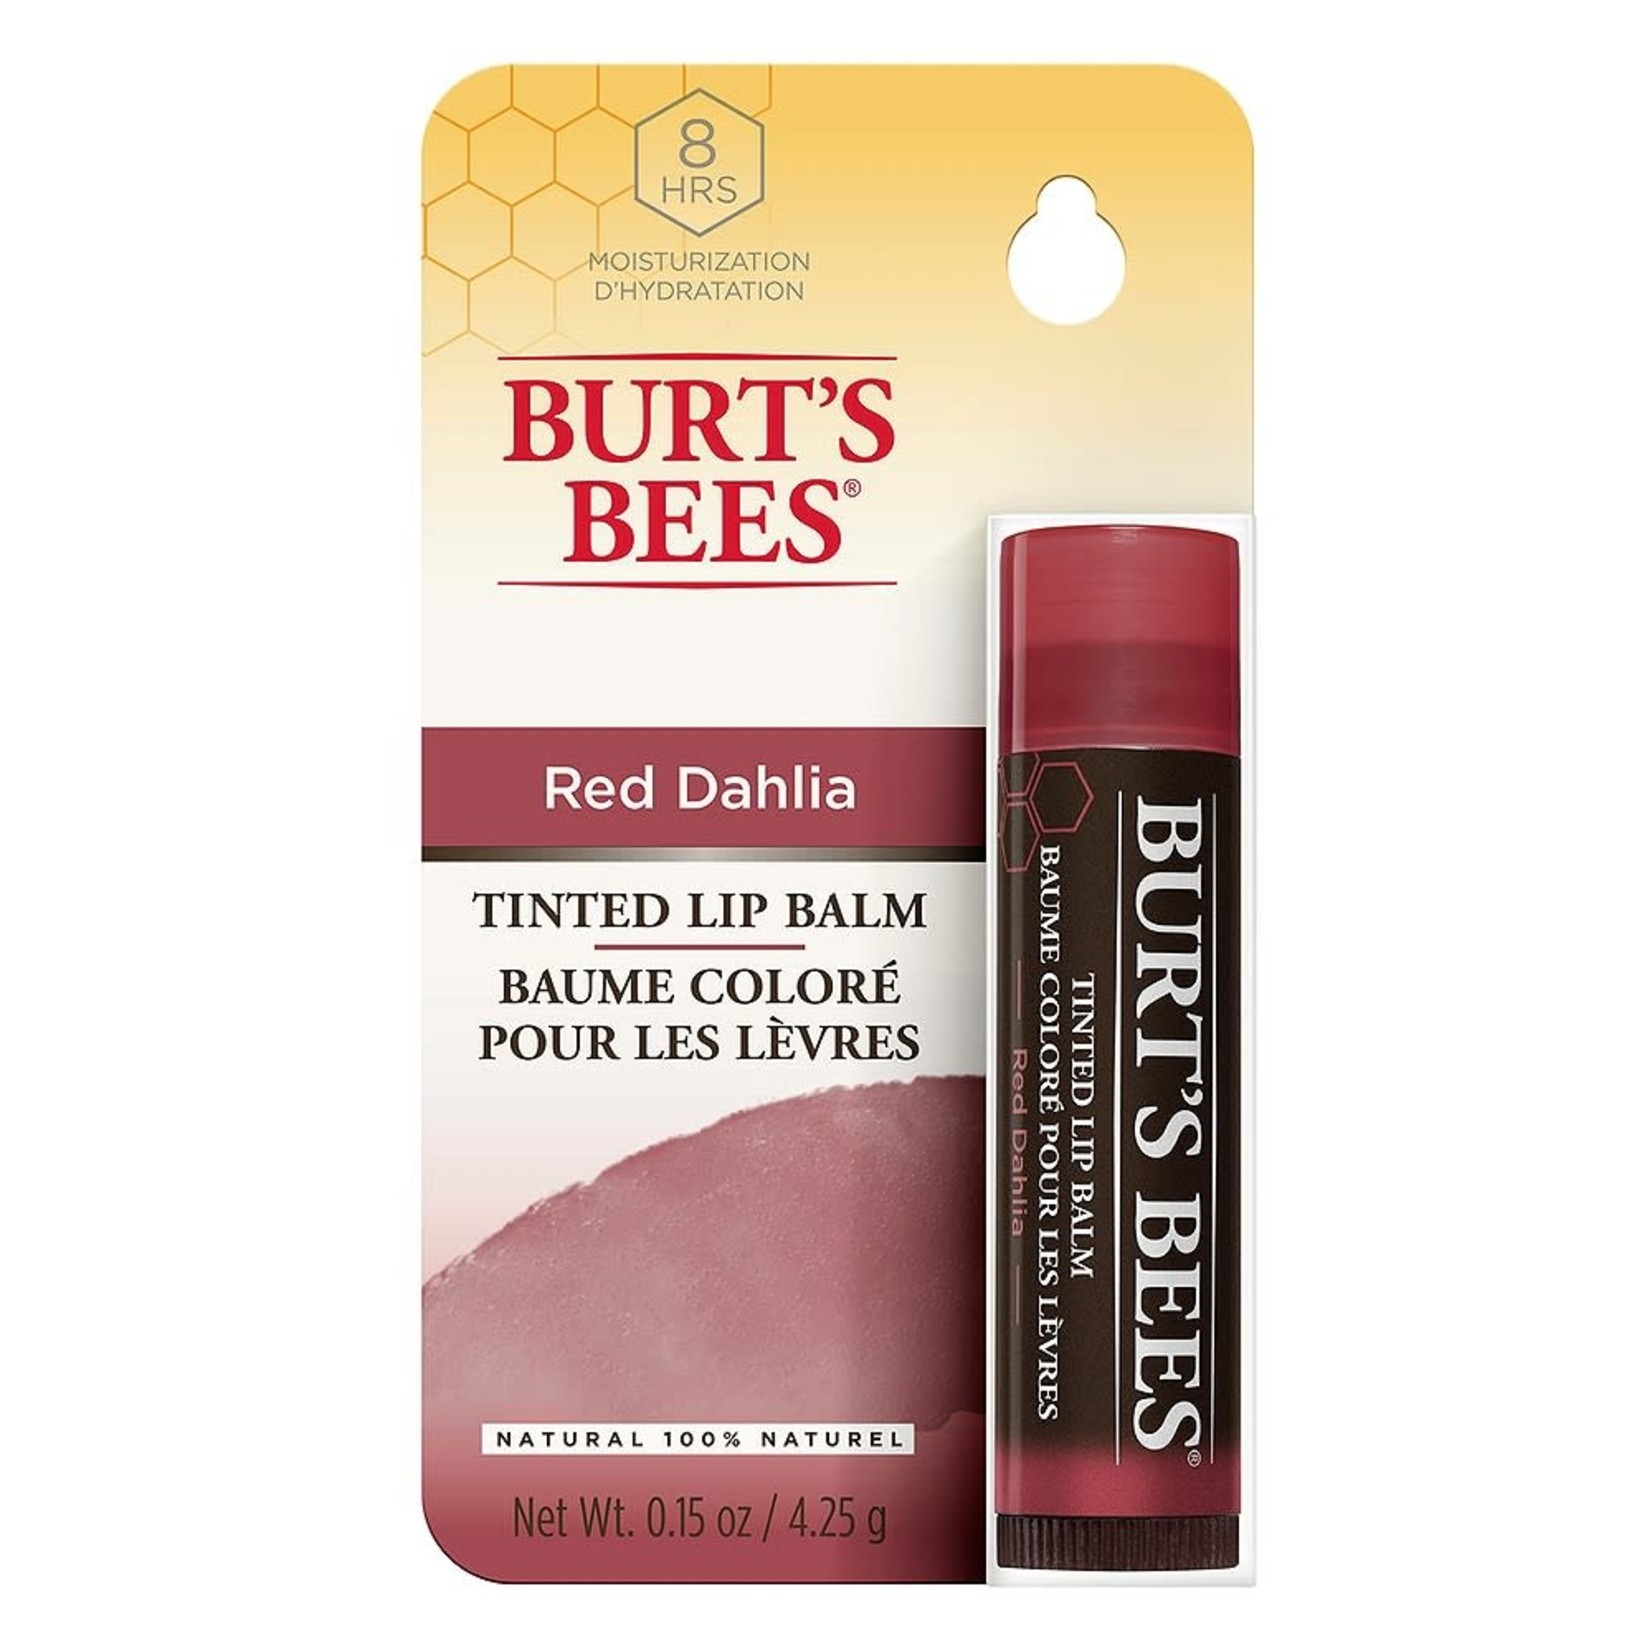 Burt's Bee Burt's Bees Tinted Lip Balm